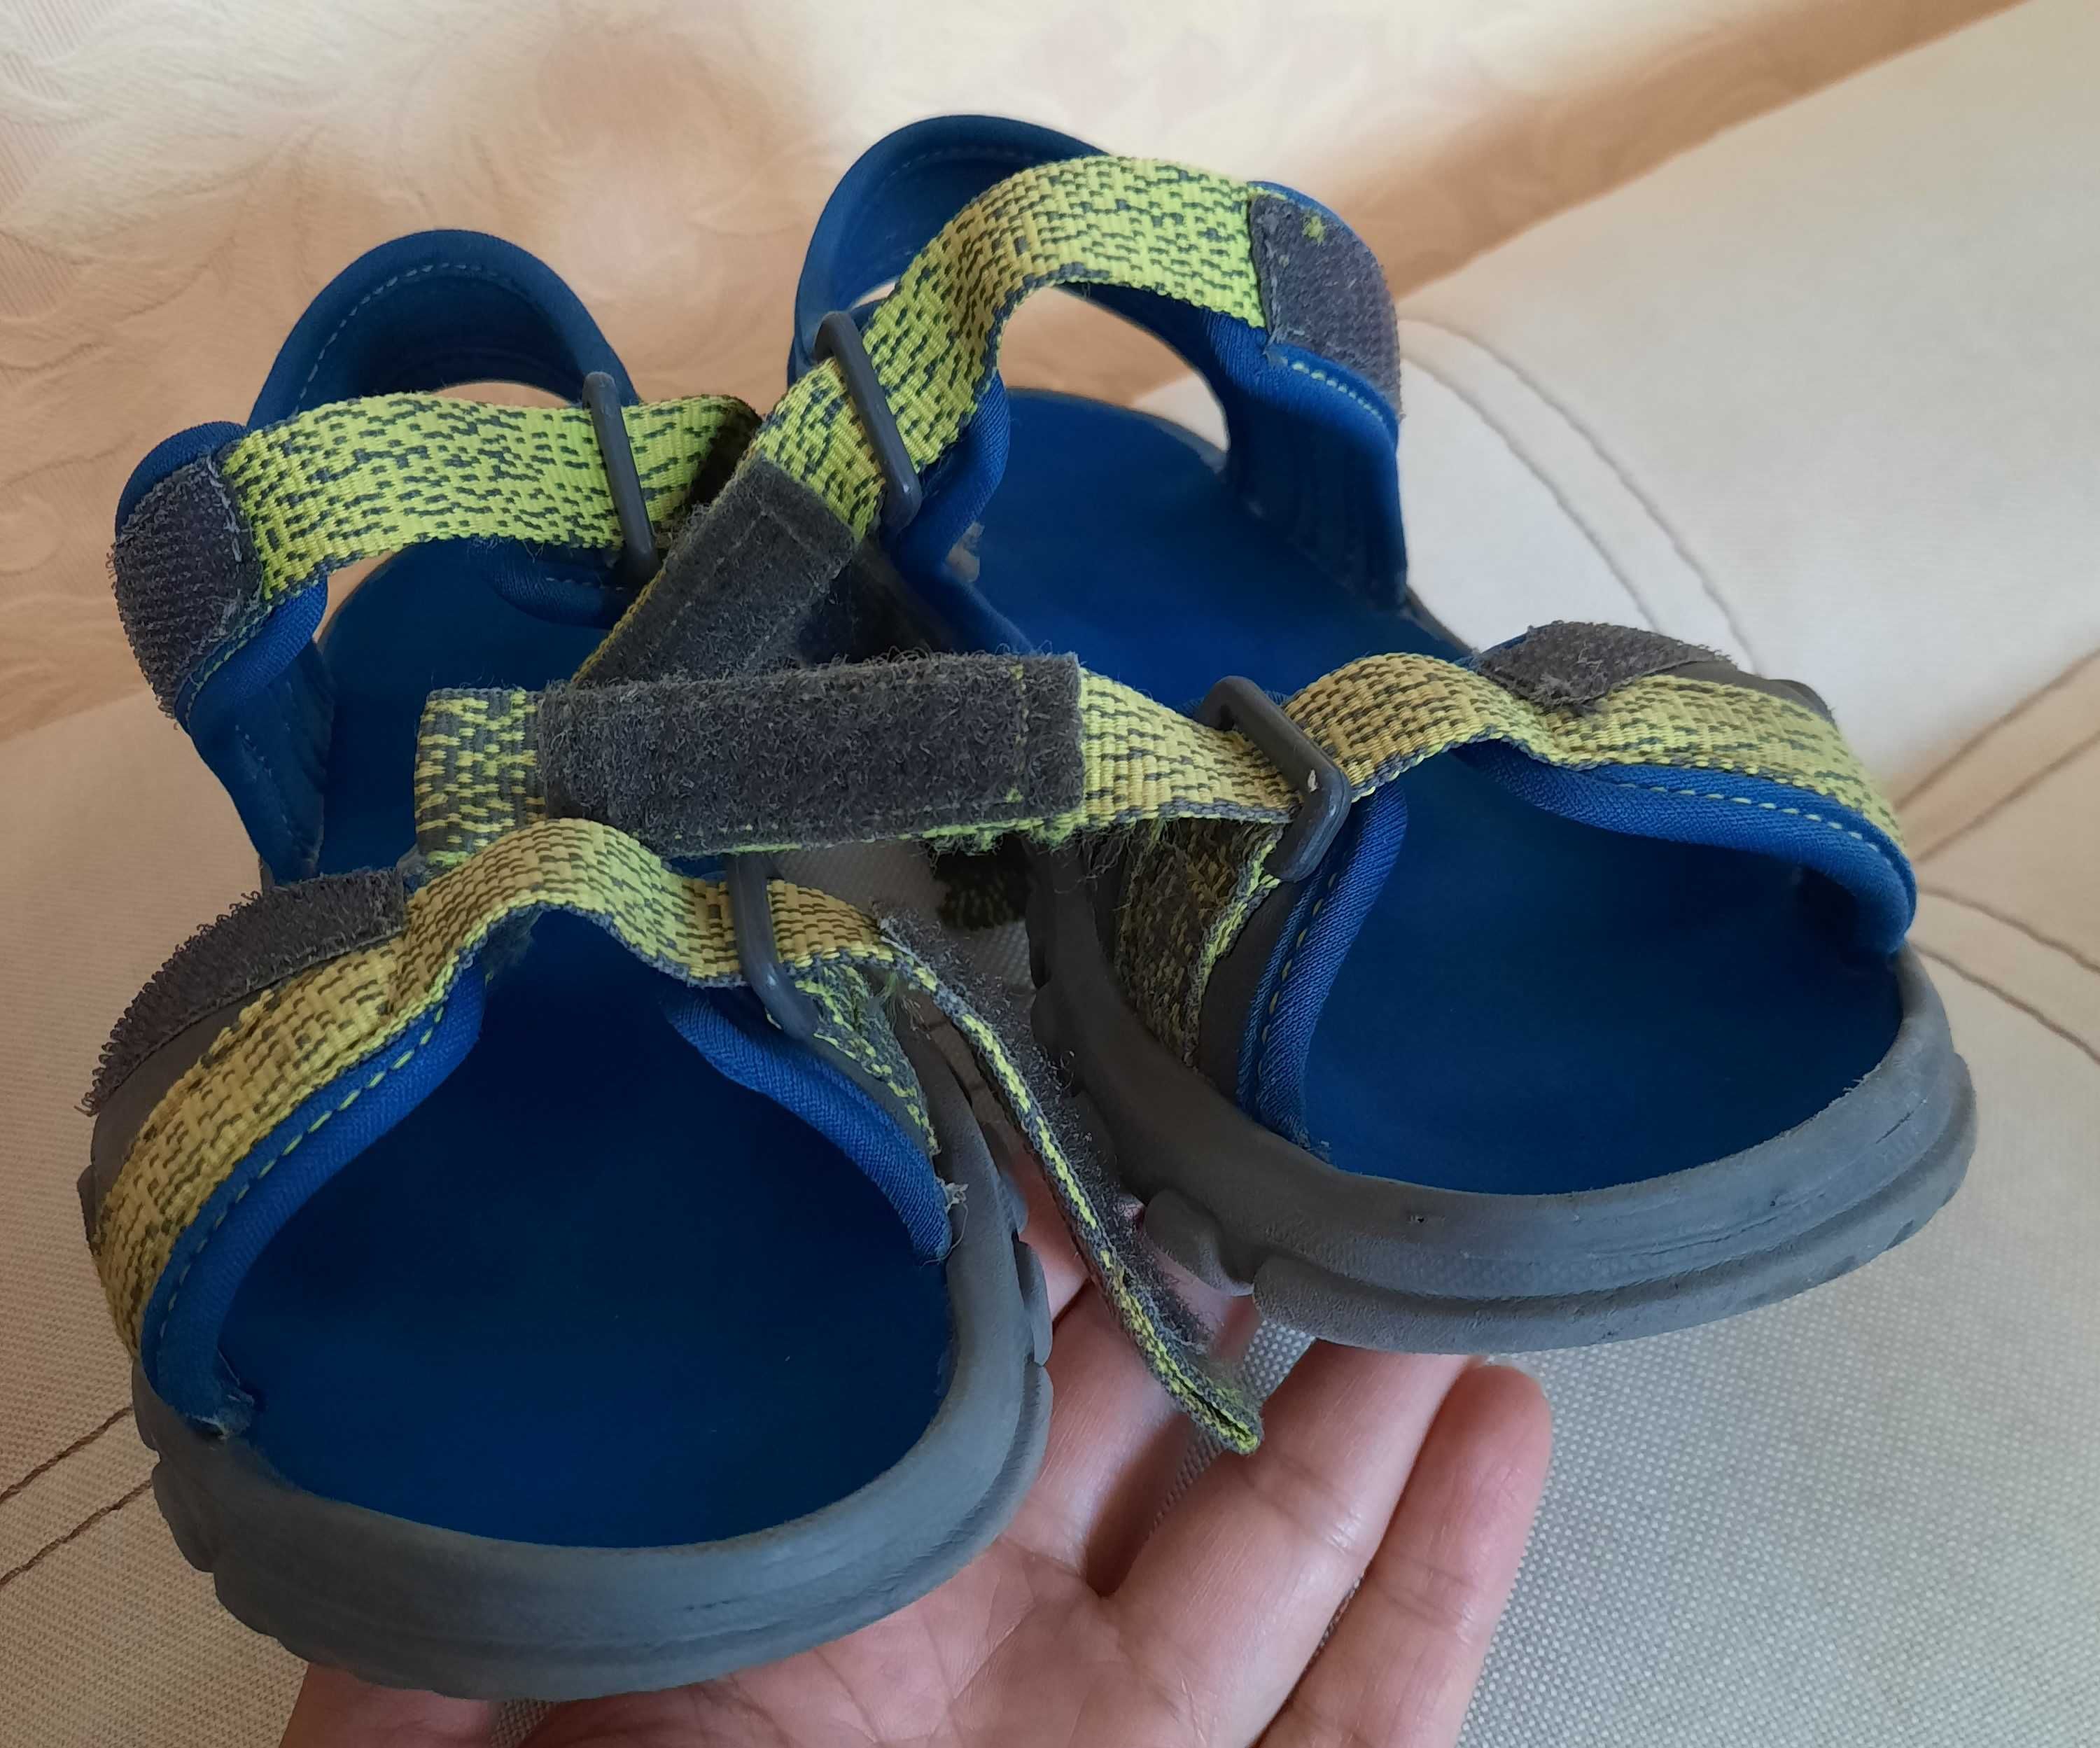 Босоножки сандалии для мальчика Quechua 31-32.